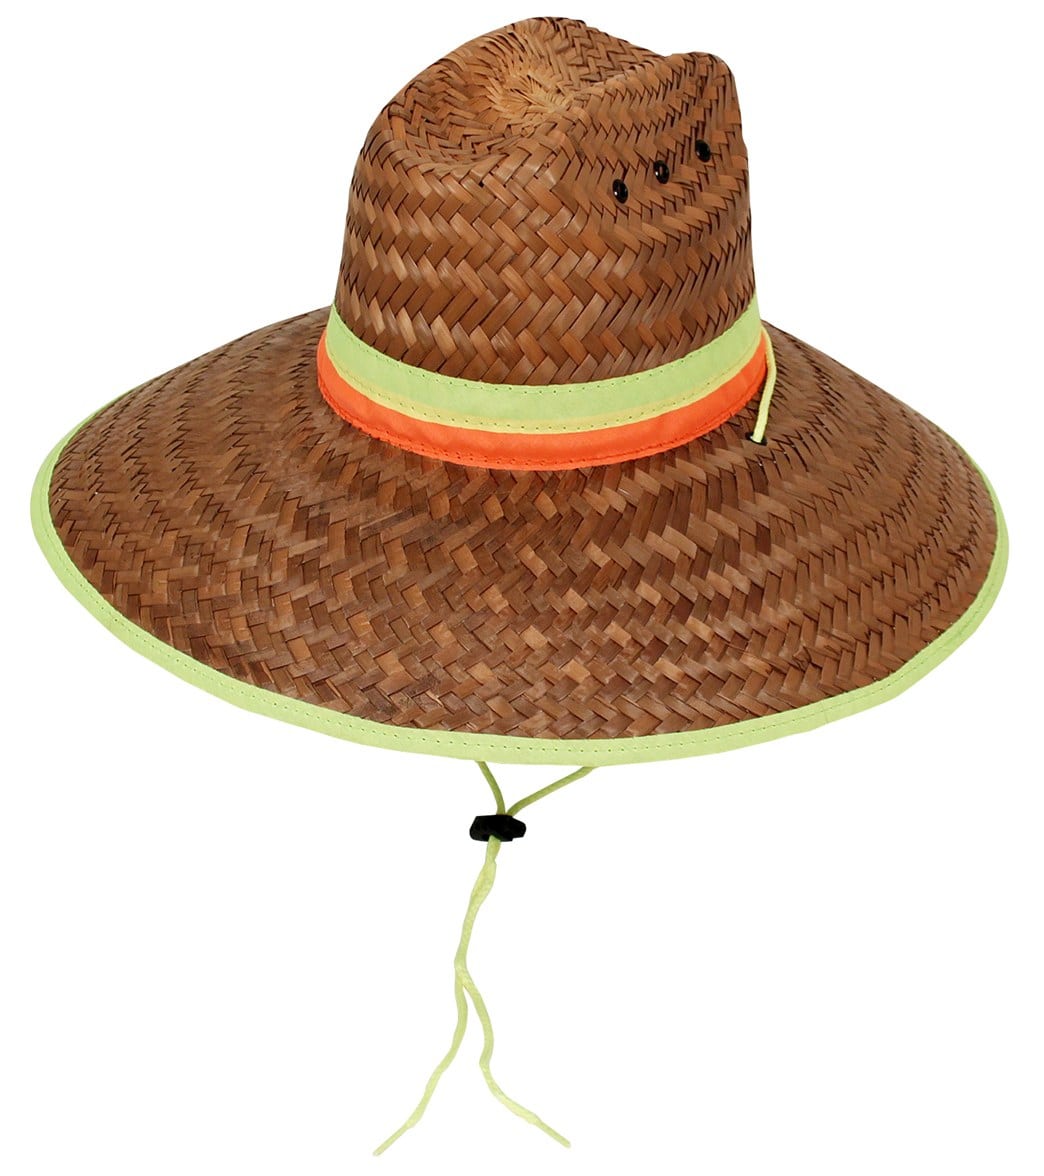 Wet Products Lifeguard Hat Flexfit With Vents Multi Color - Swimoutlet.com